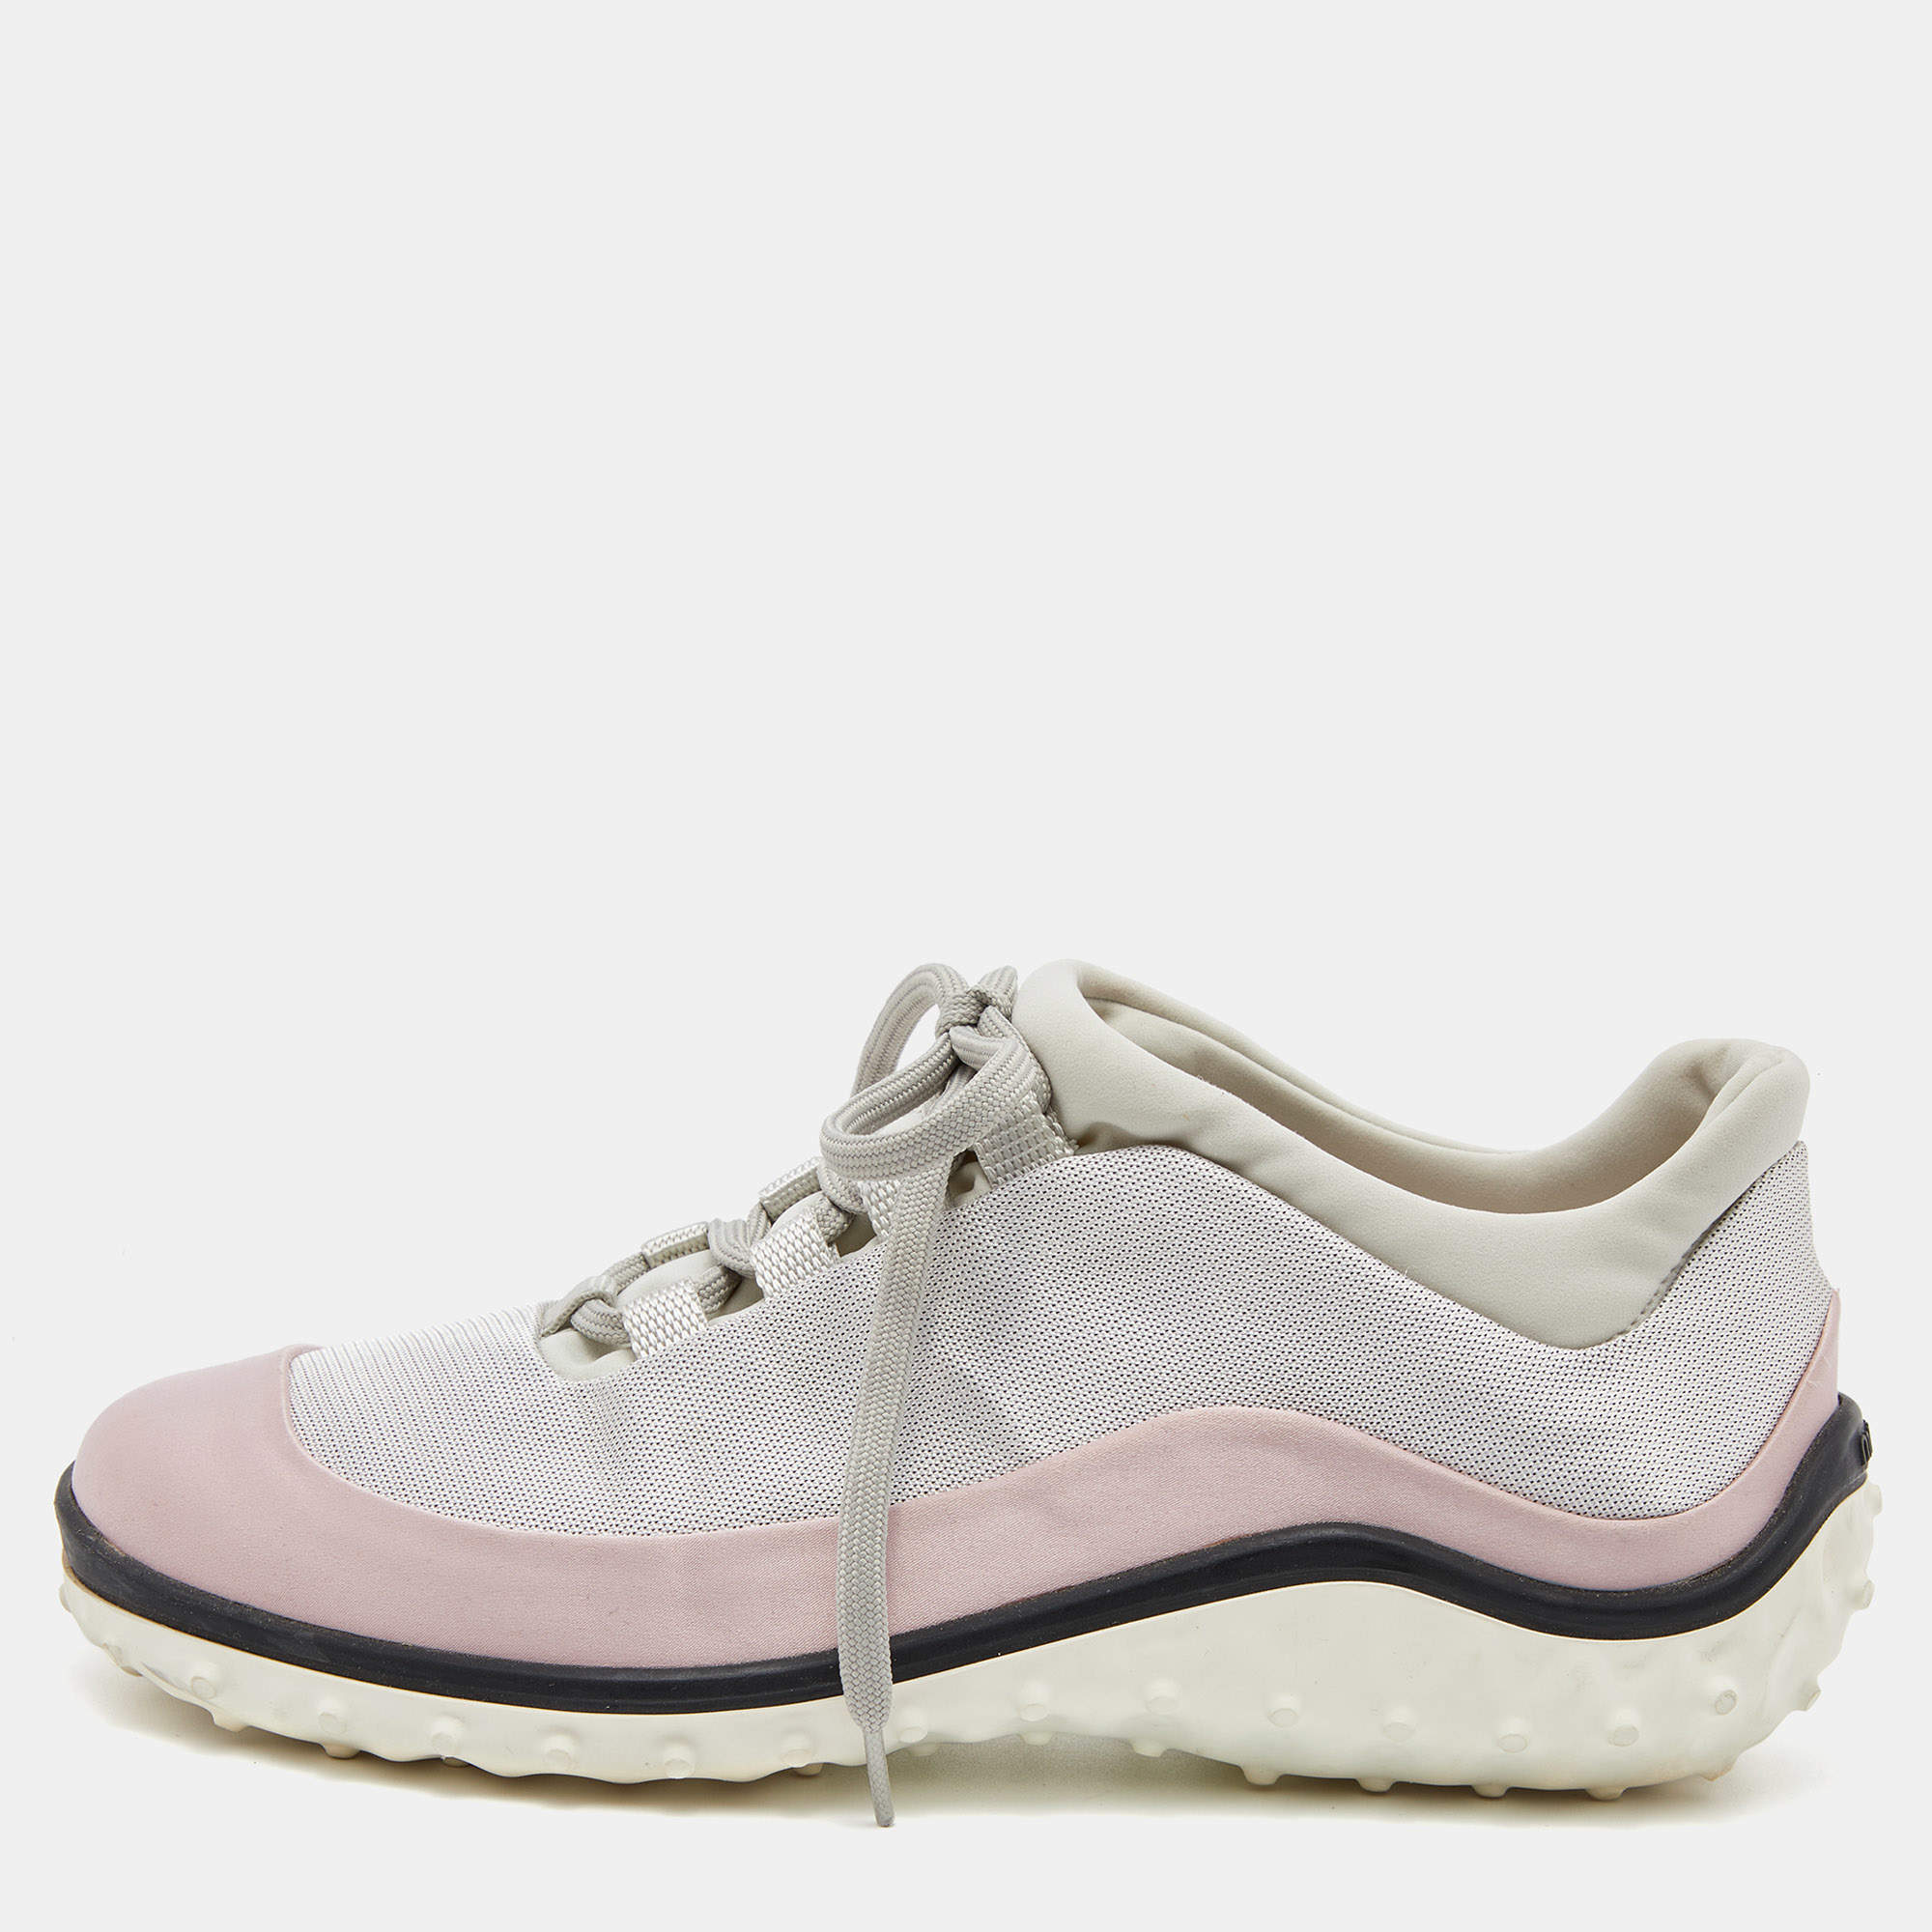 Miu Miu Pink/Grey Satin and Fabric Low Sneakers Size 36 Miu Miu | TLC